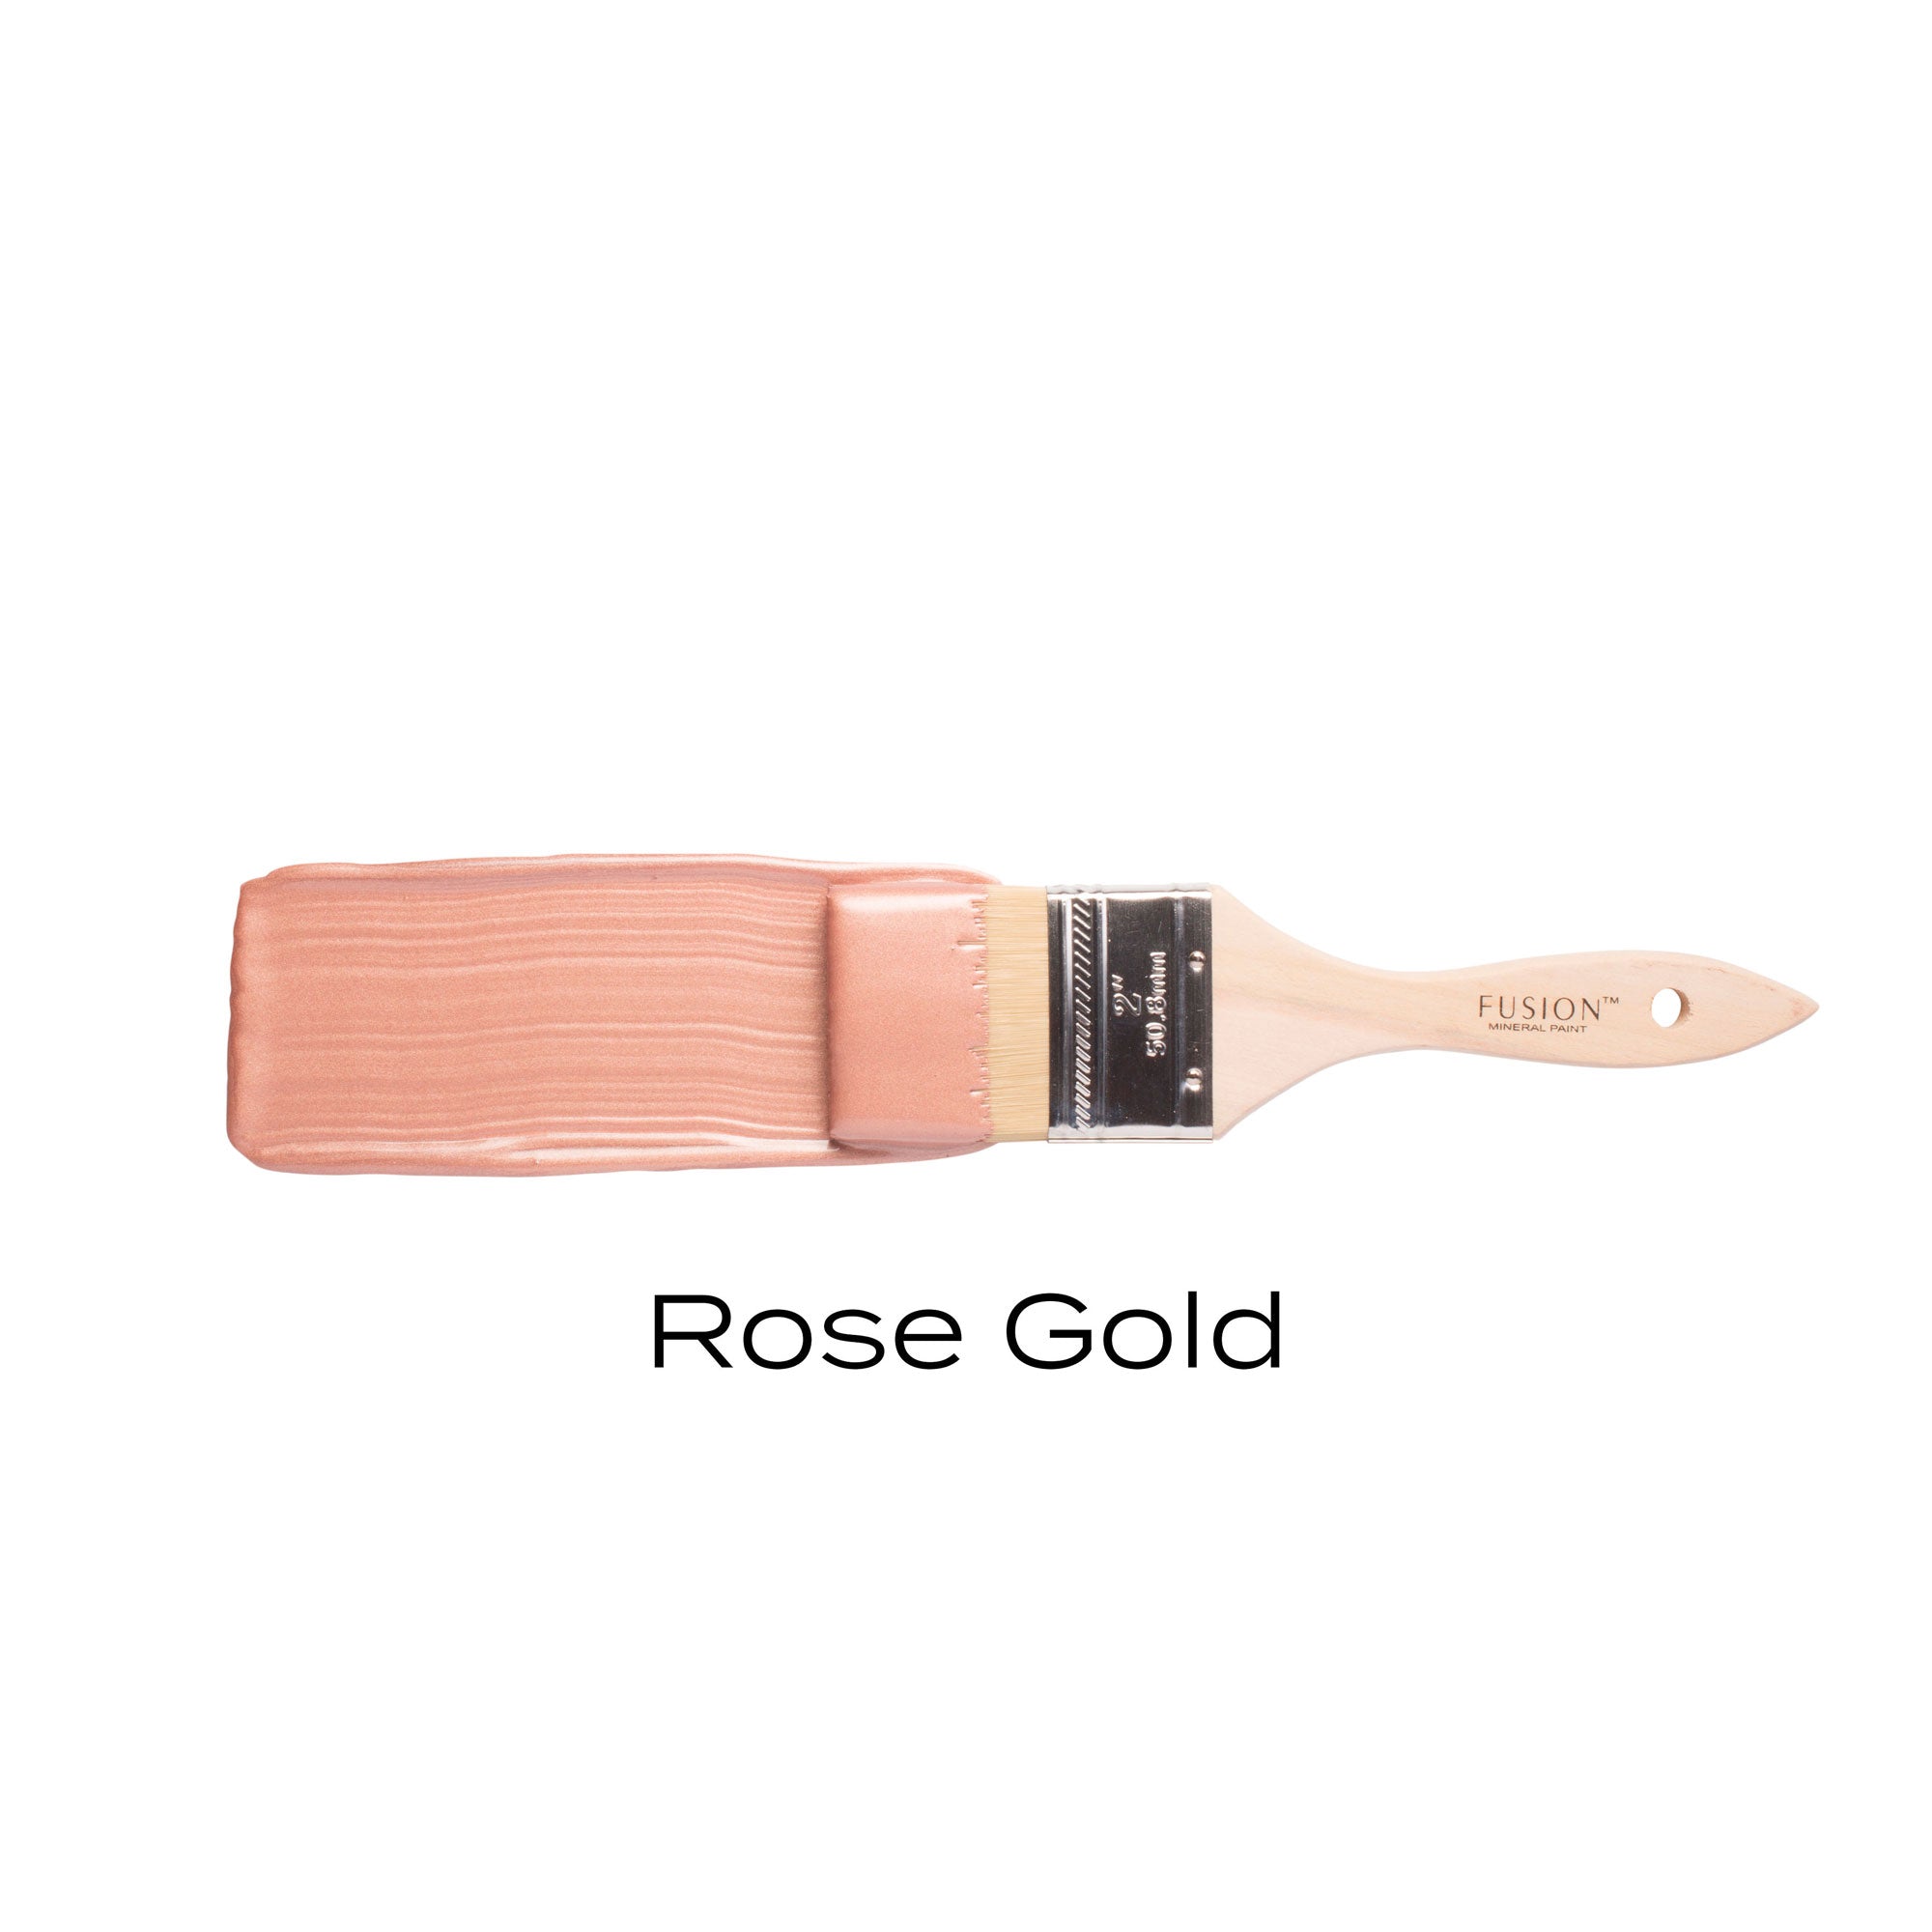 Rose Gold Metallic